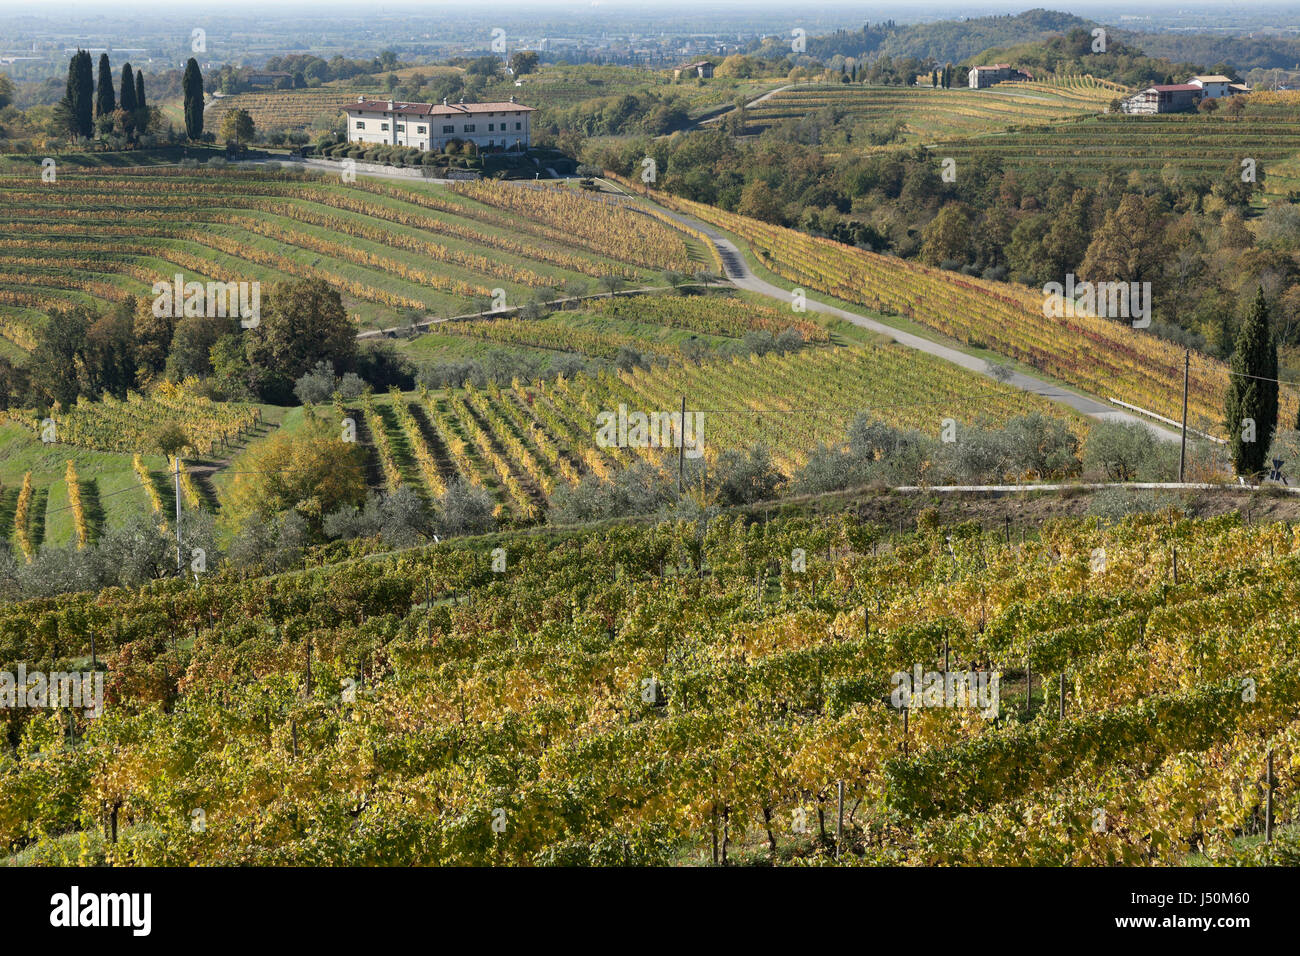 View of vineyards of Collio, Abbey of Corno di Rosazzo, Friuli, Italy Stock Photo